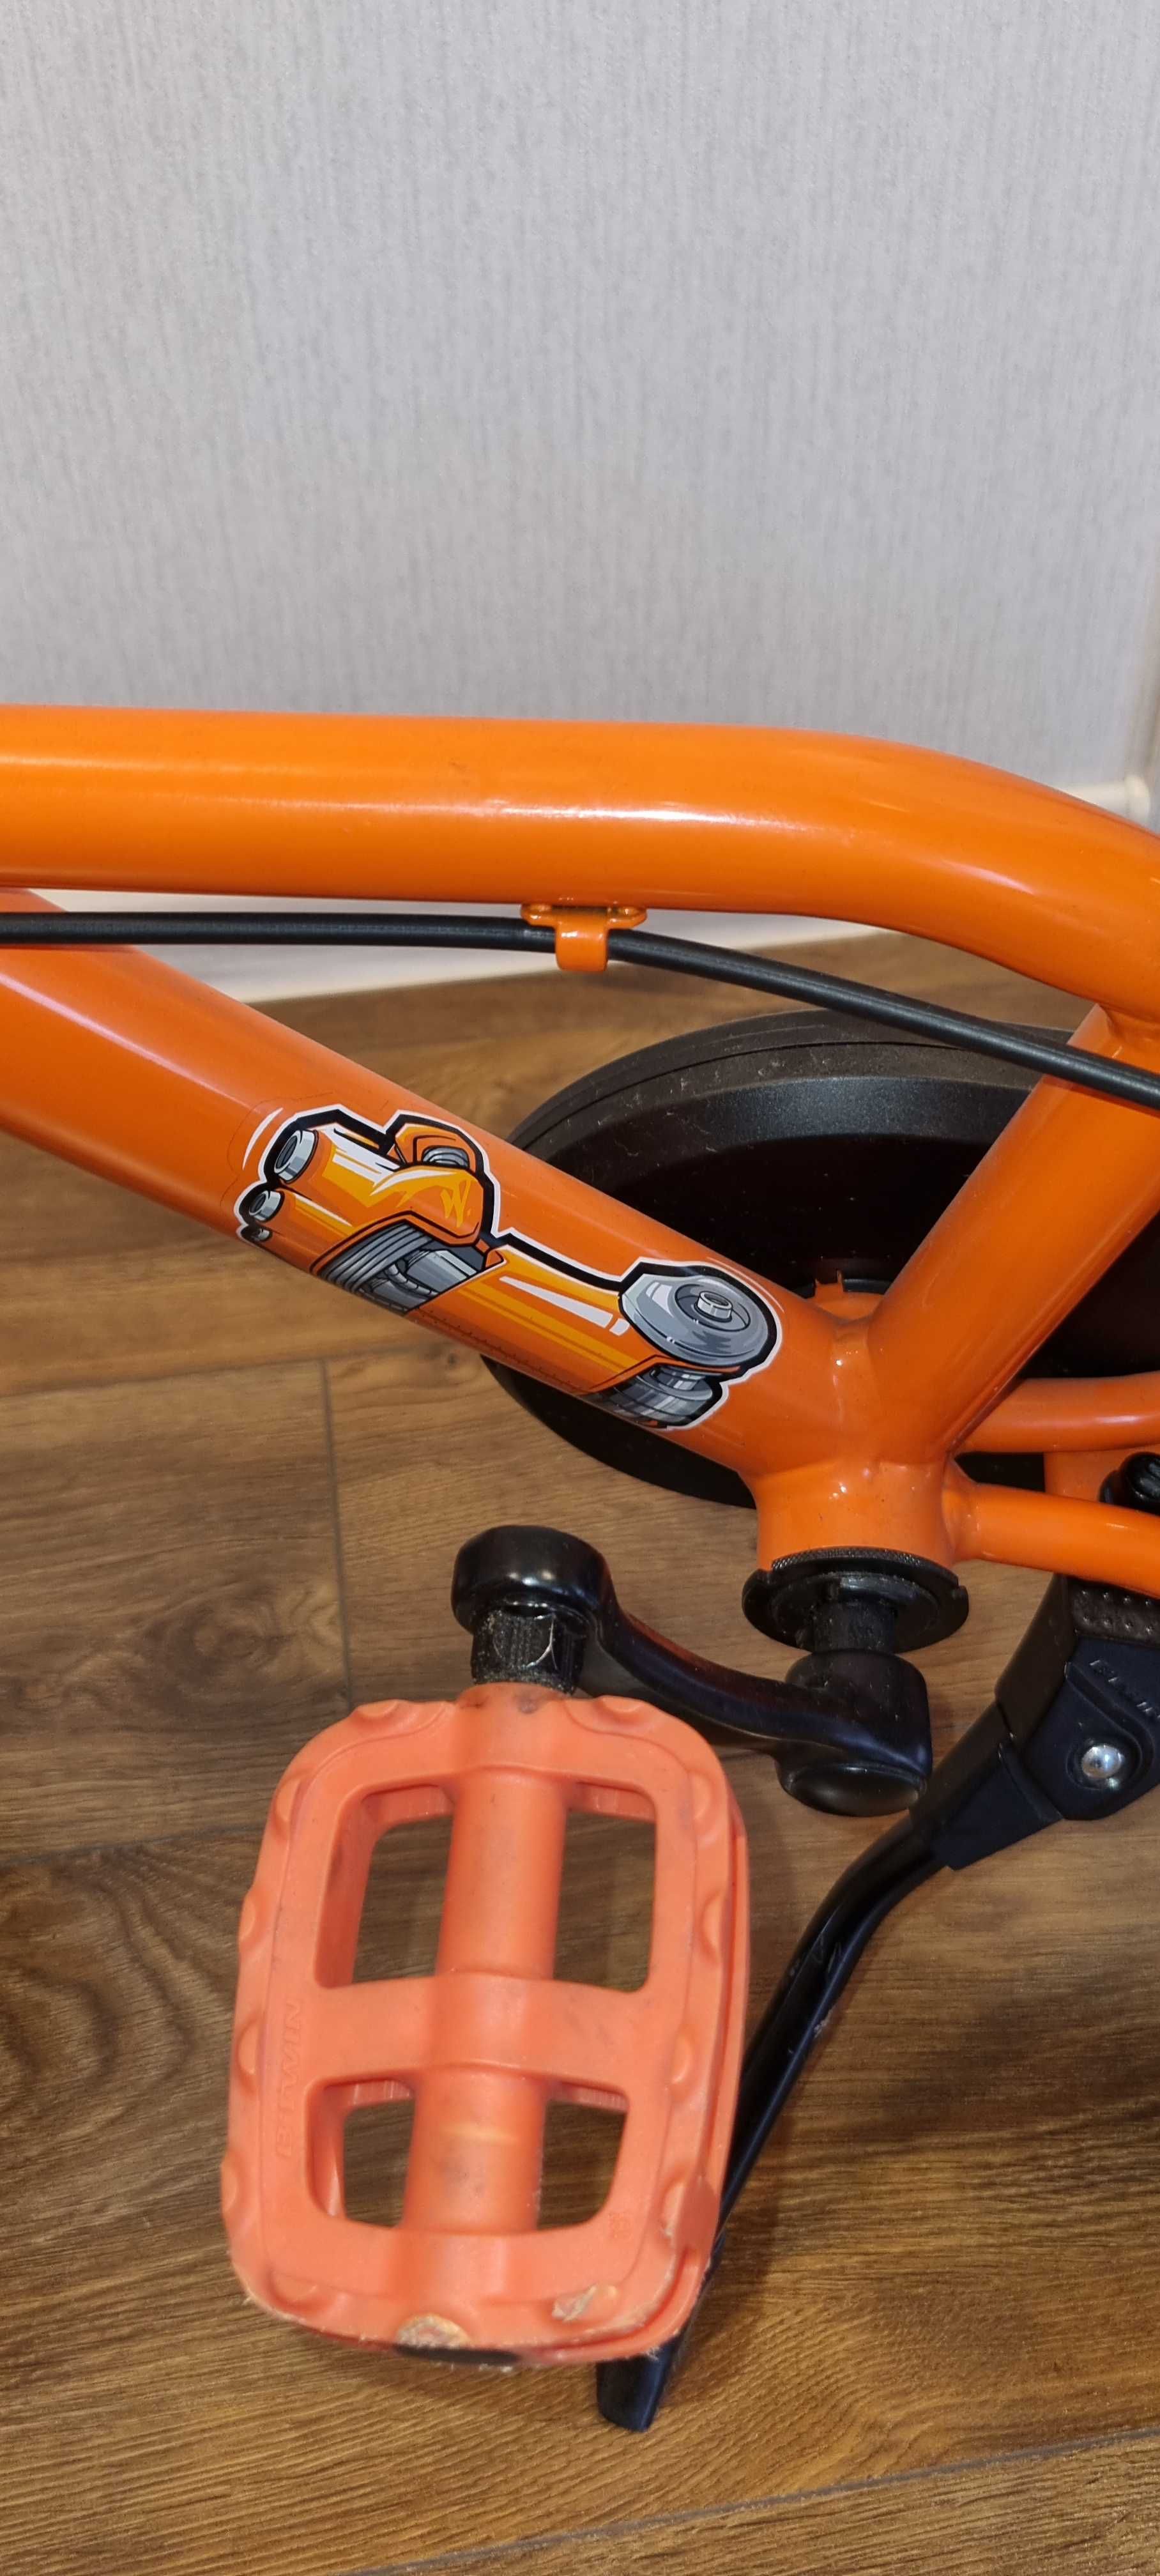 BTWIN
Велосипед 500 дитячий, колеса 16", для дітей 4,5-6 років - Robot